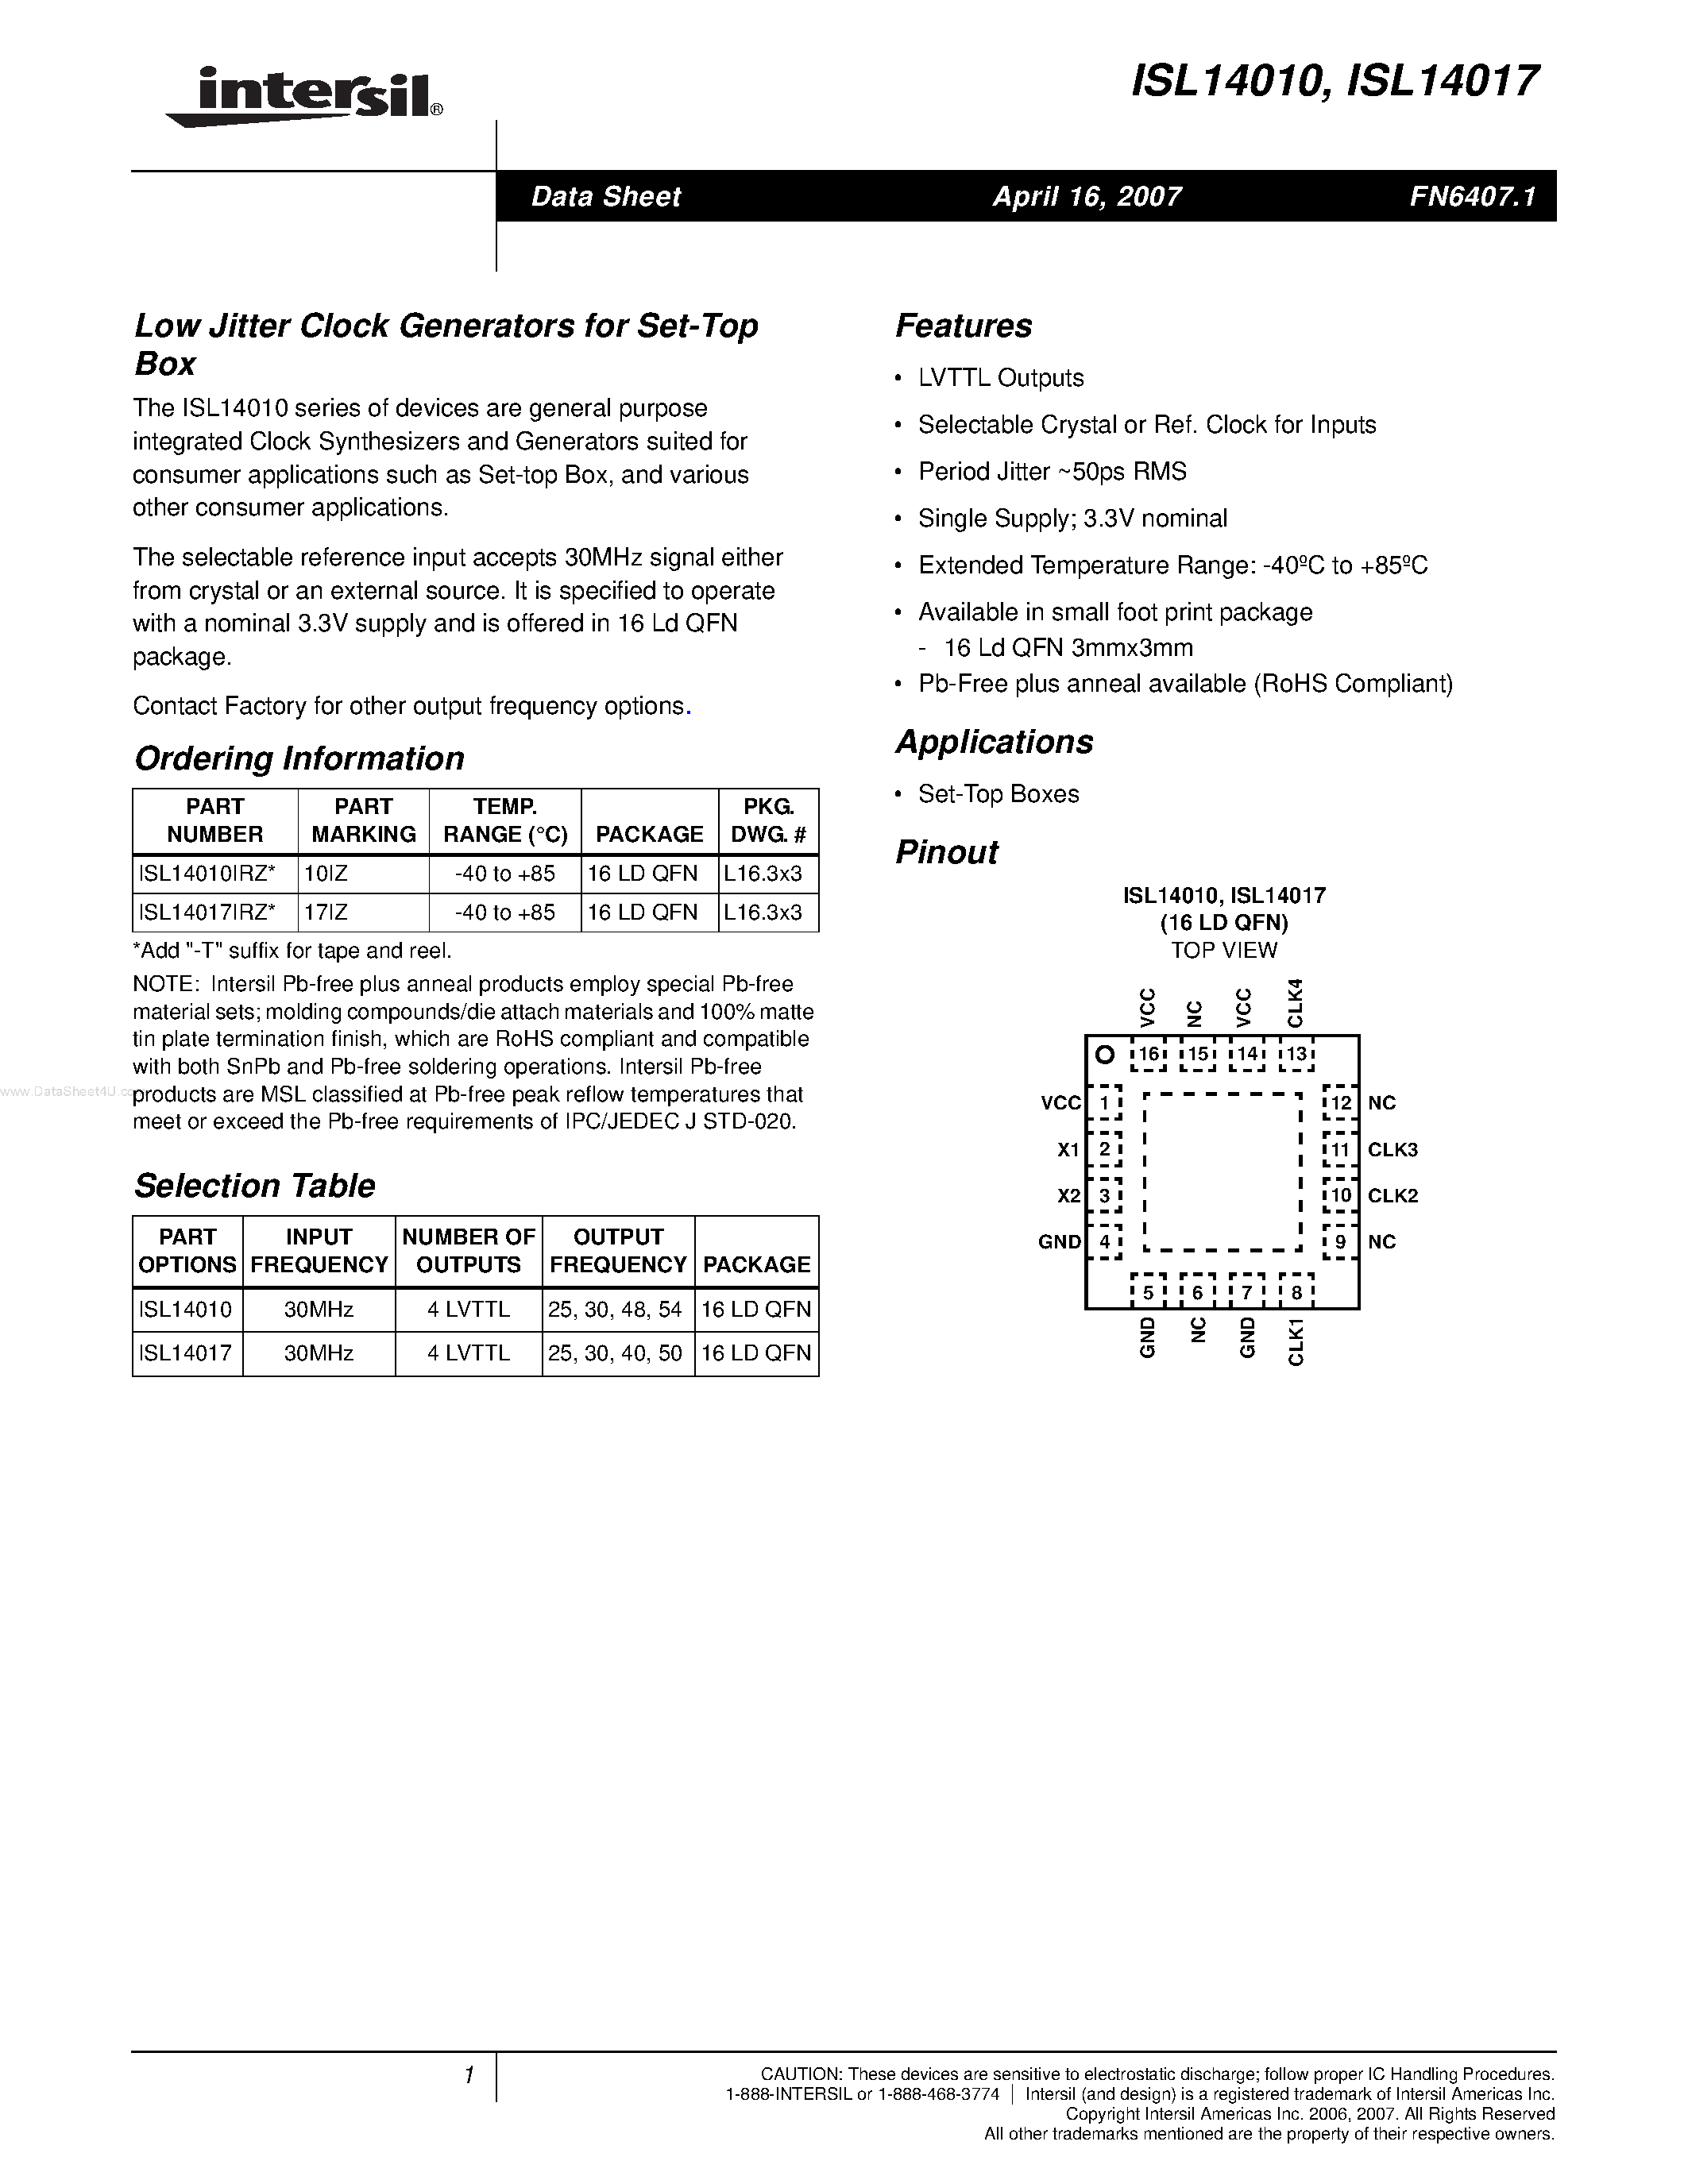 Datasheet ISL14010 - (ISL14010 / ISL14017) Low Jitter Clock Generators page 1